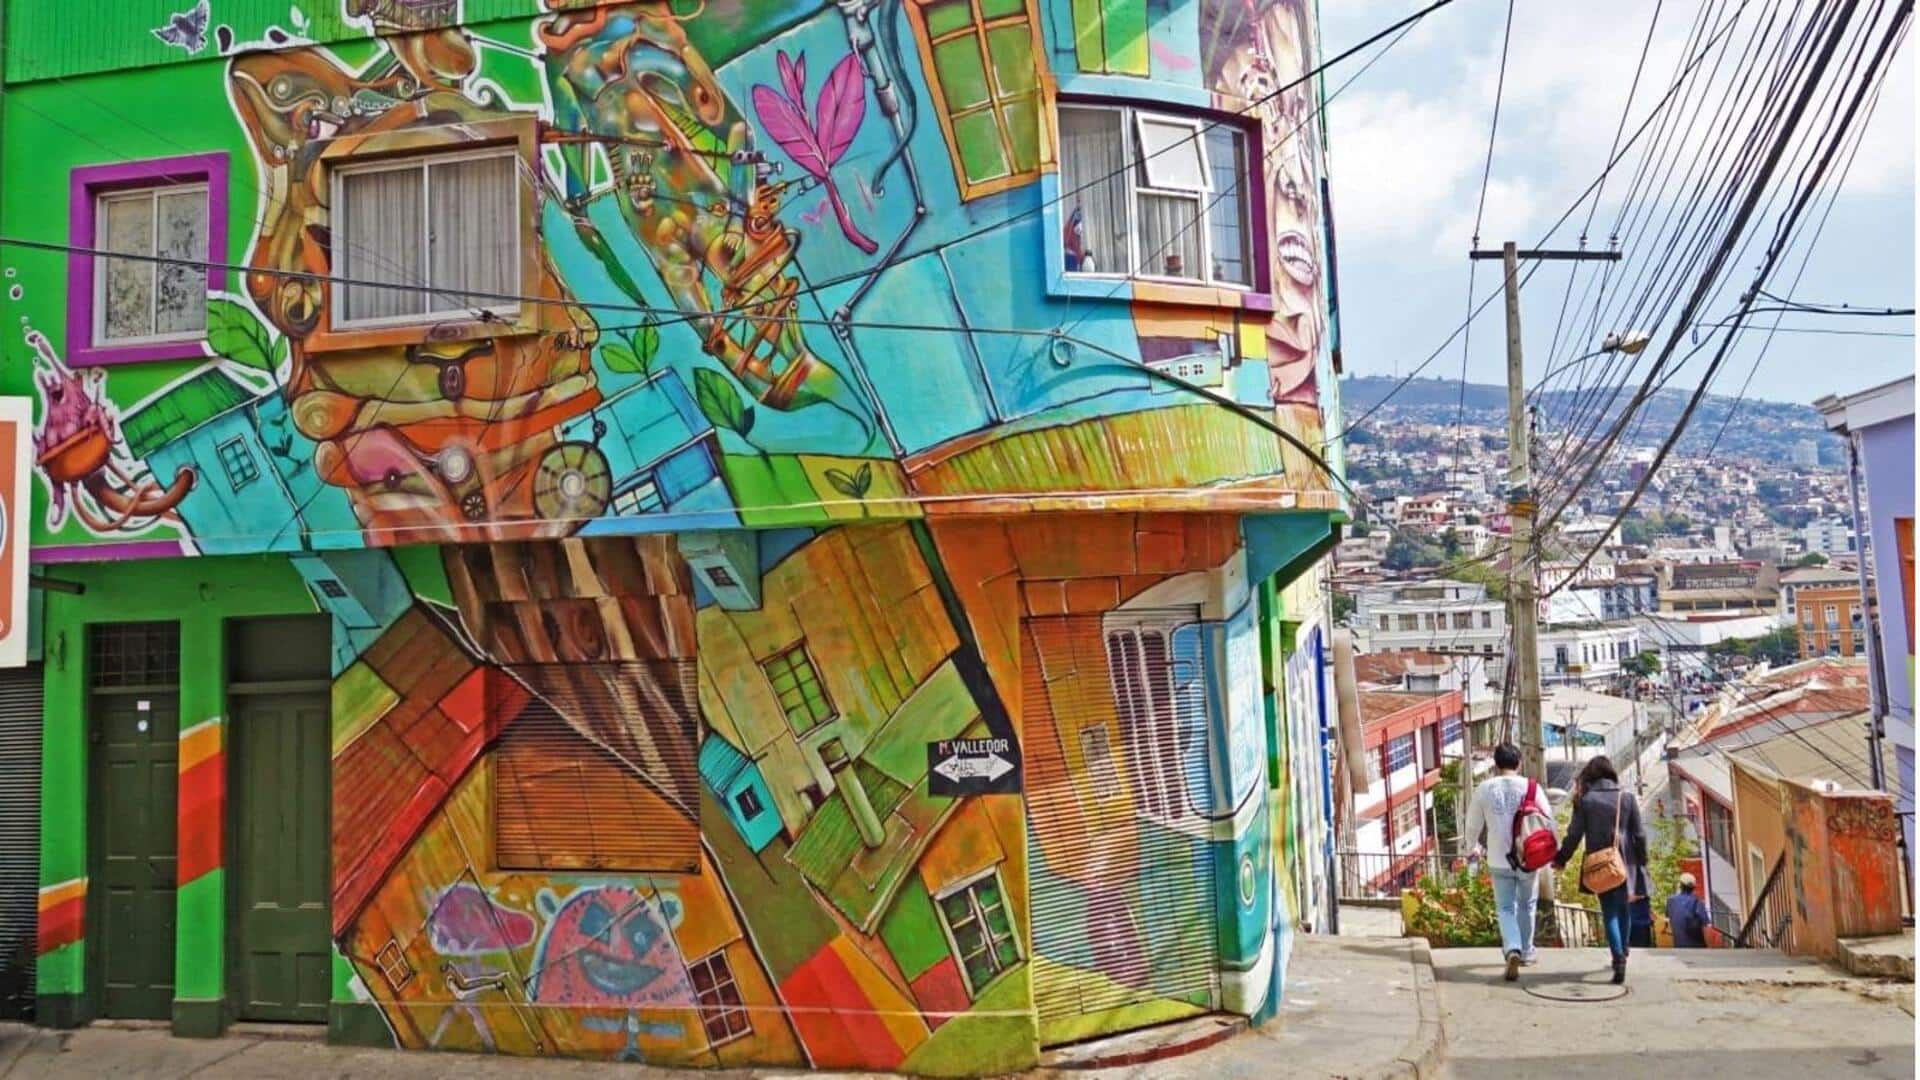 Valparaiso, Chili adalah kanvas seni perkotaan dan sejarah